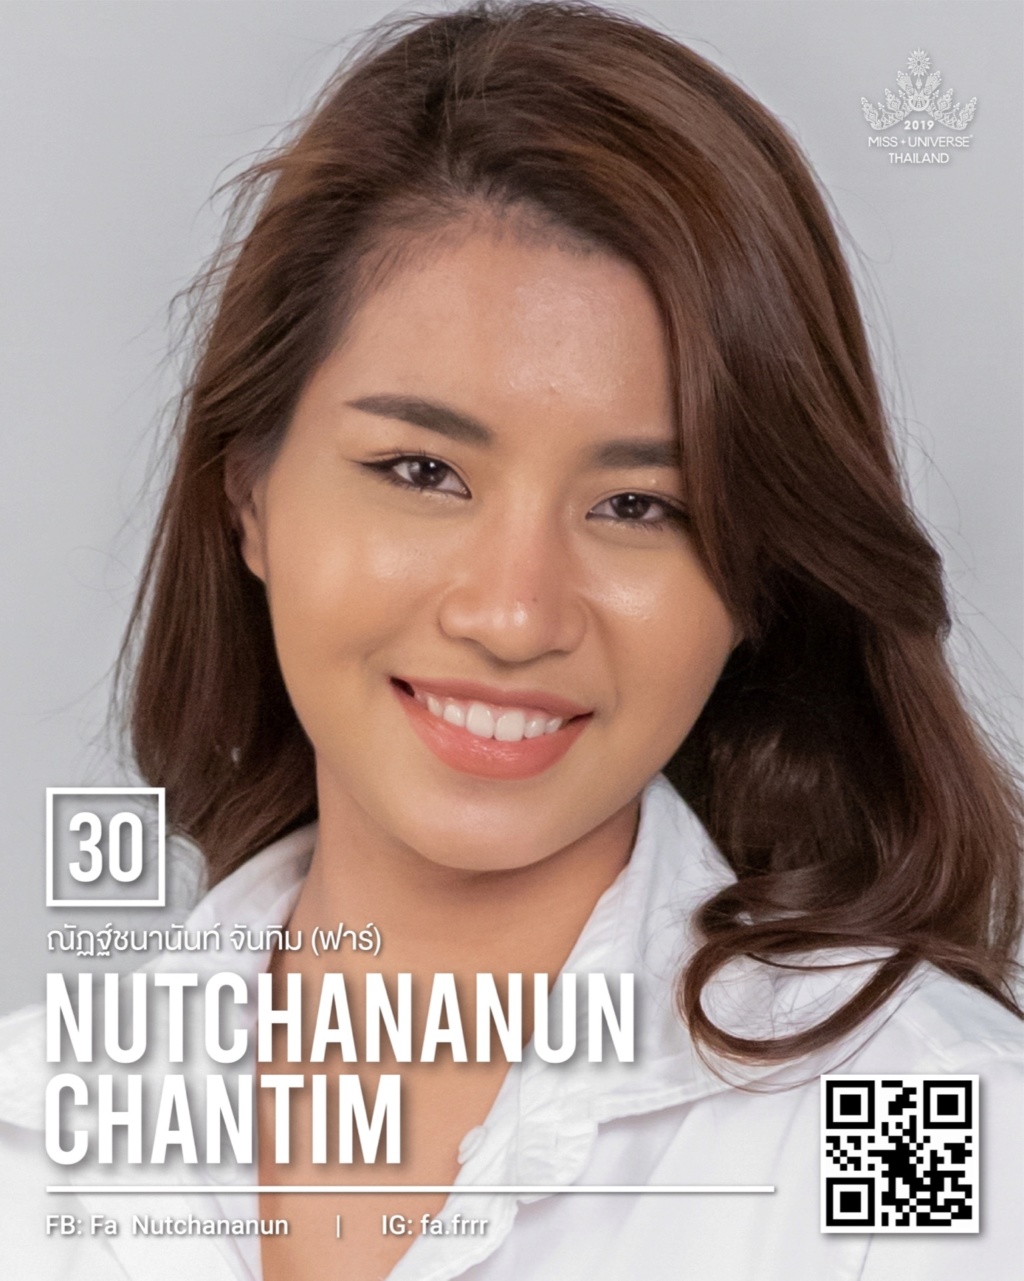 Miss Universe THAILAND 2019 - PORTRAITS!  - Page 2 11220